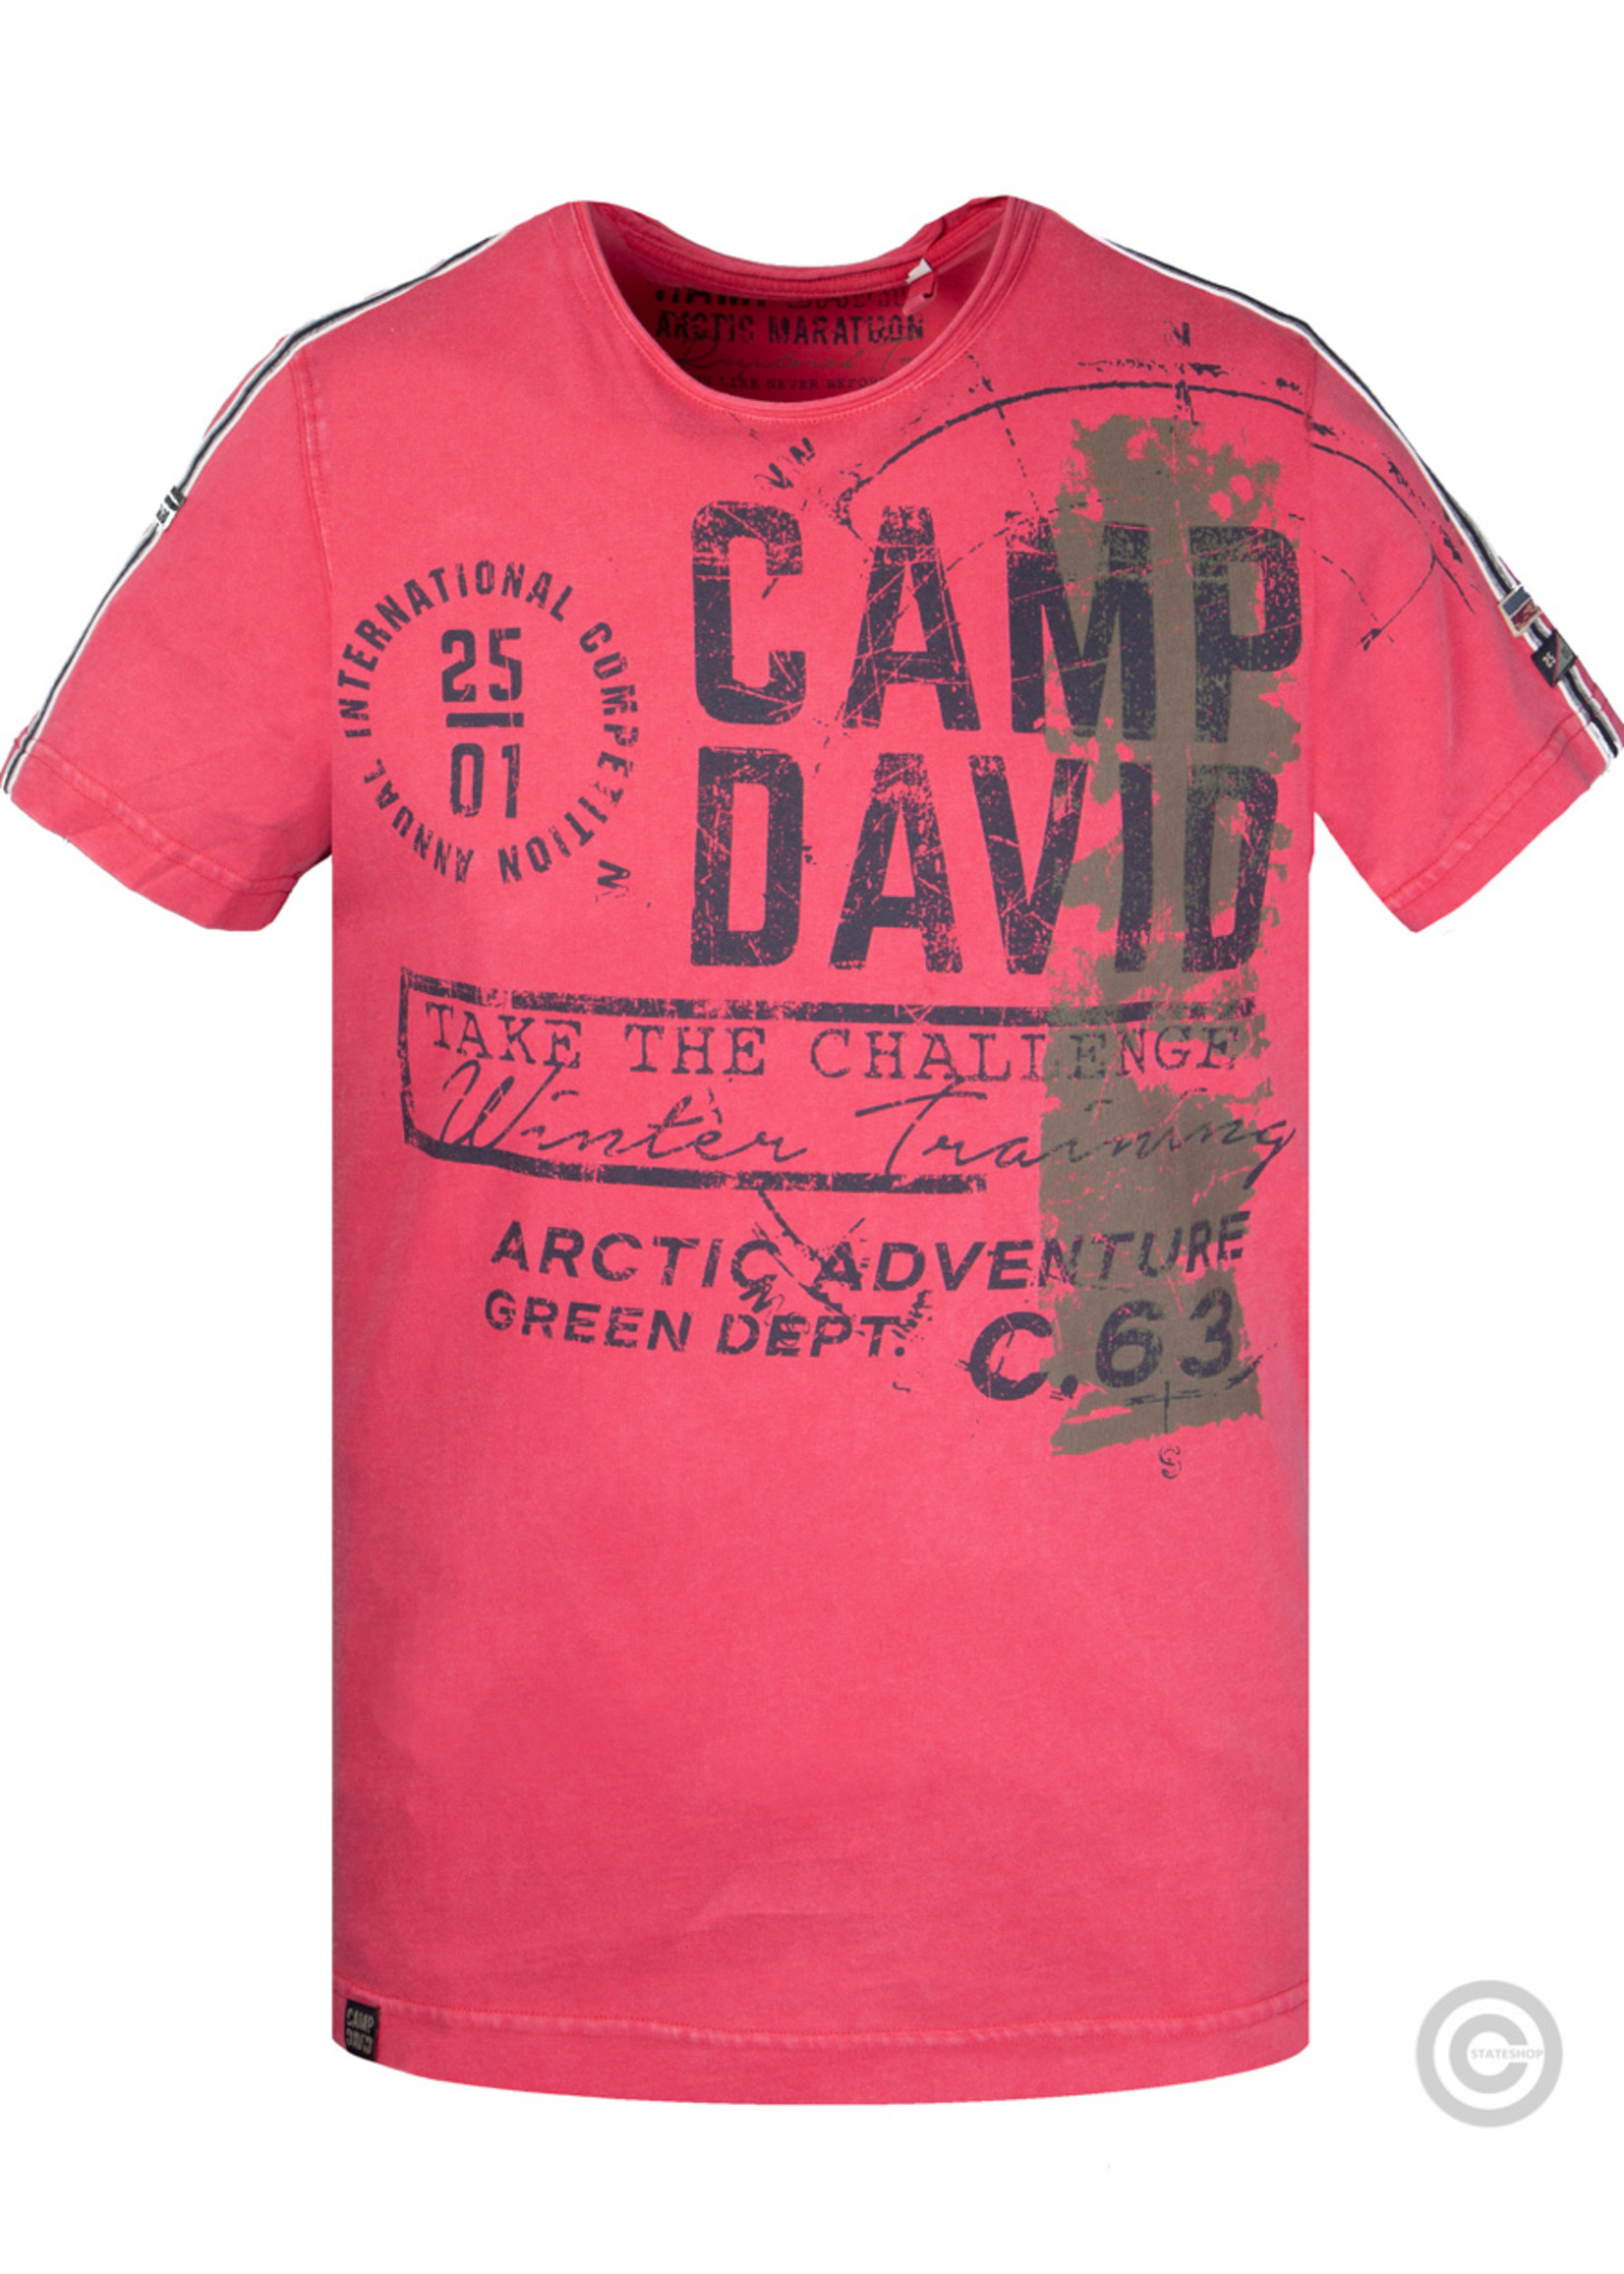 Camp David  Camp David, t-shirt au look vintage avec étiquette imprimée